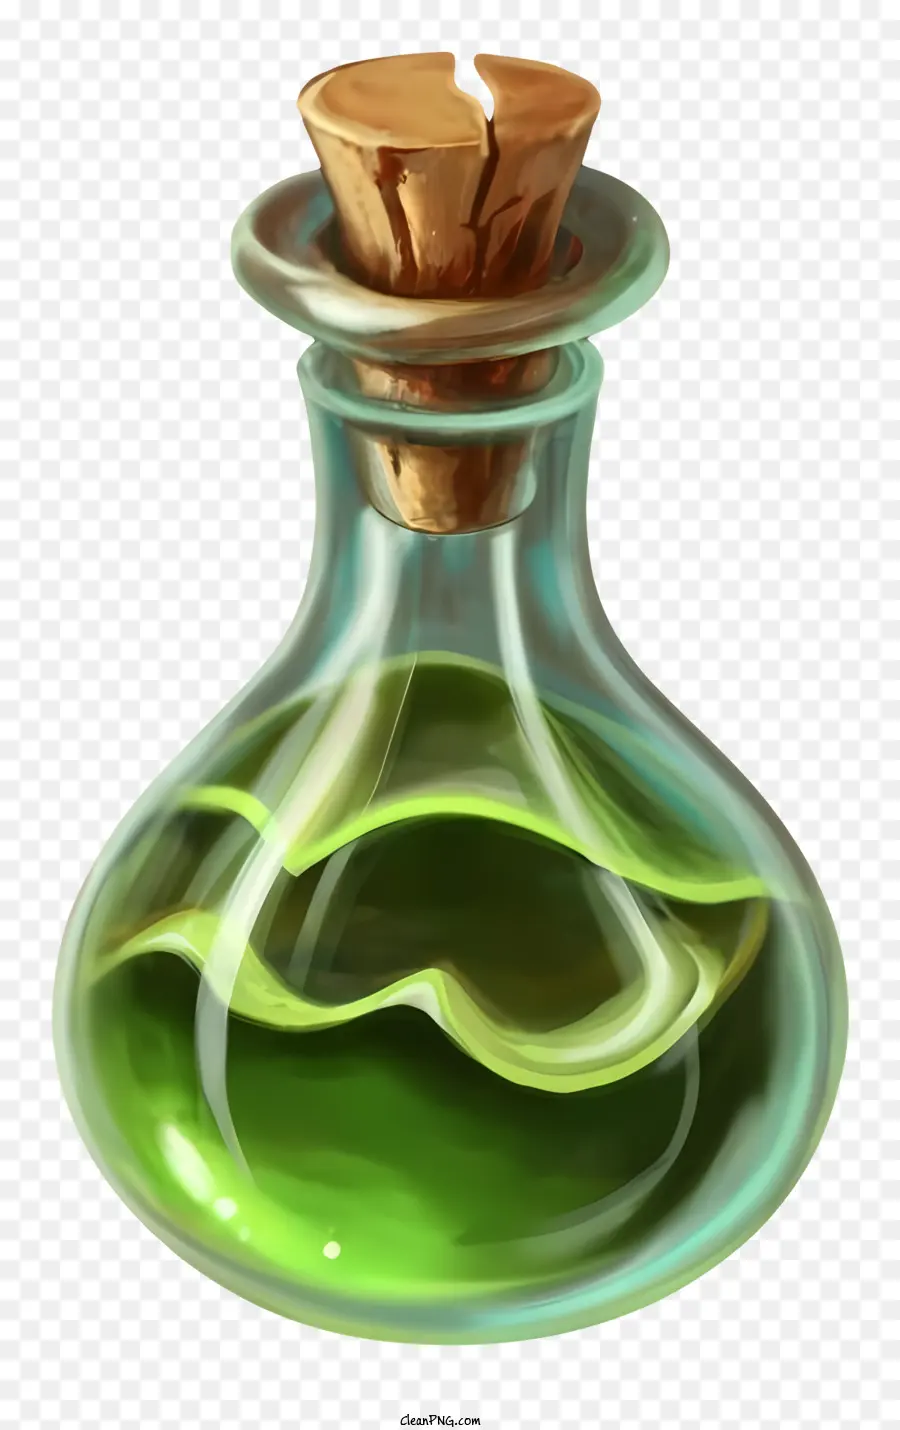 Chai thủy tinh cổ điển chai có chai màu xanh lá cây cũ và chai thủy tinh bẩn - Chai thủy tinh xanh cũ, bẩn có chất lỏng